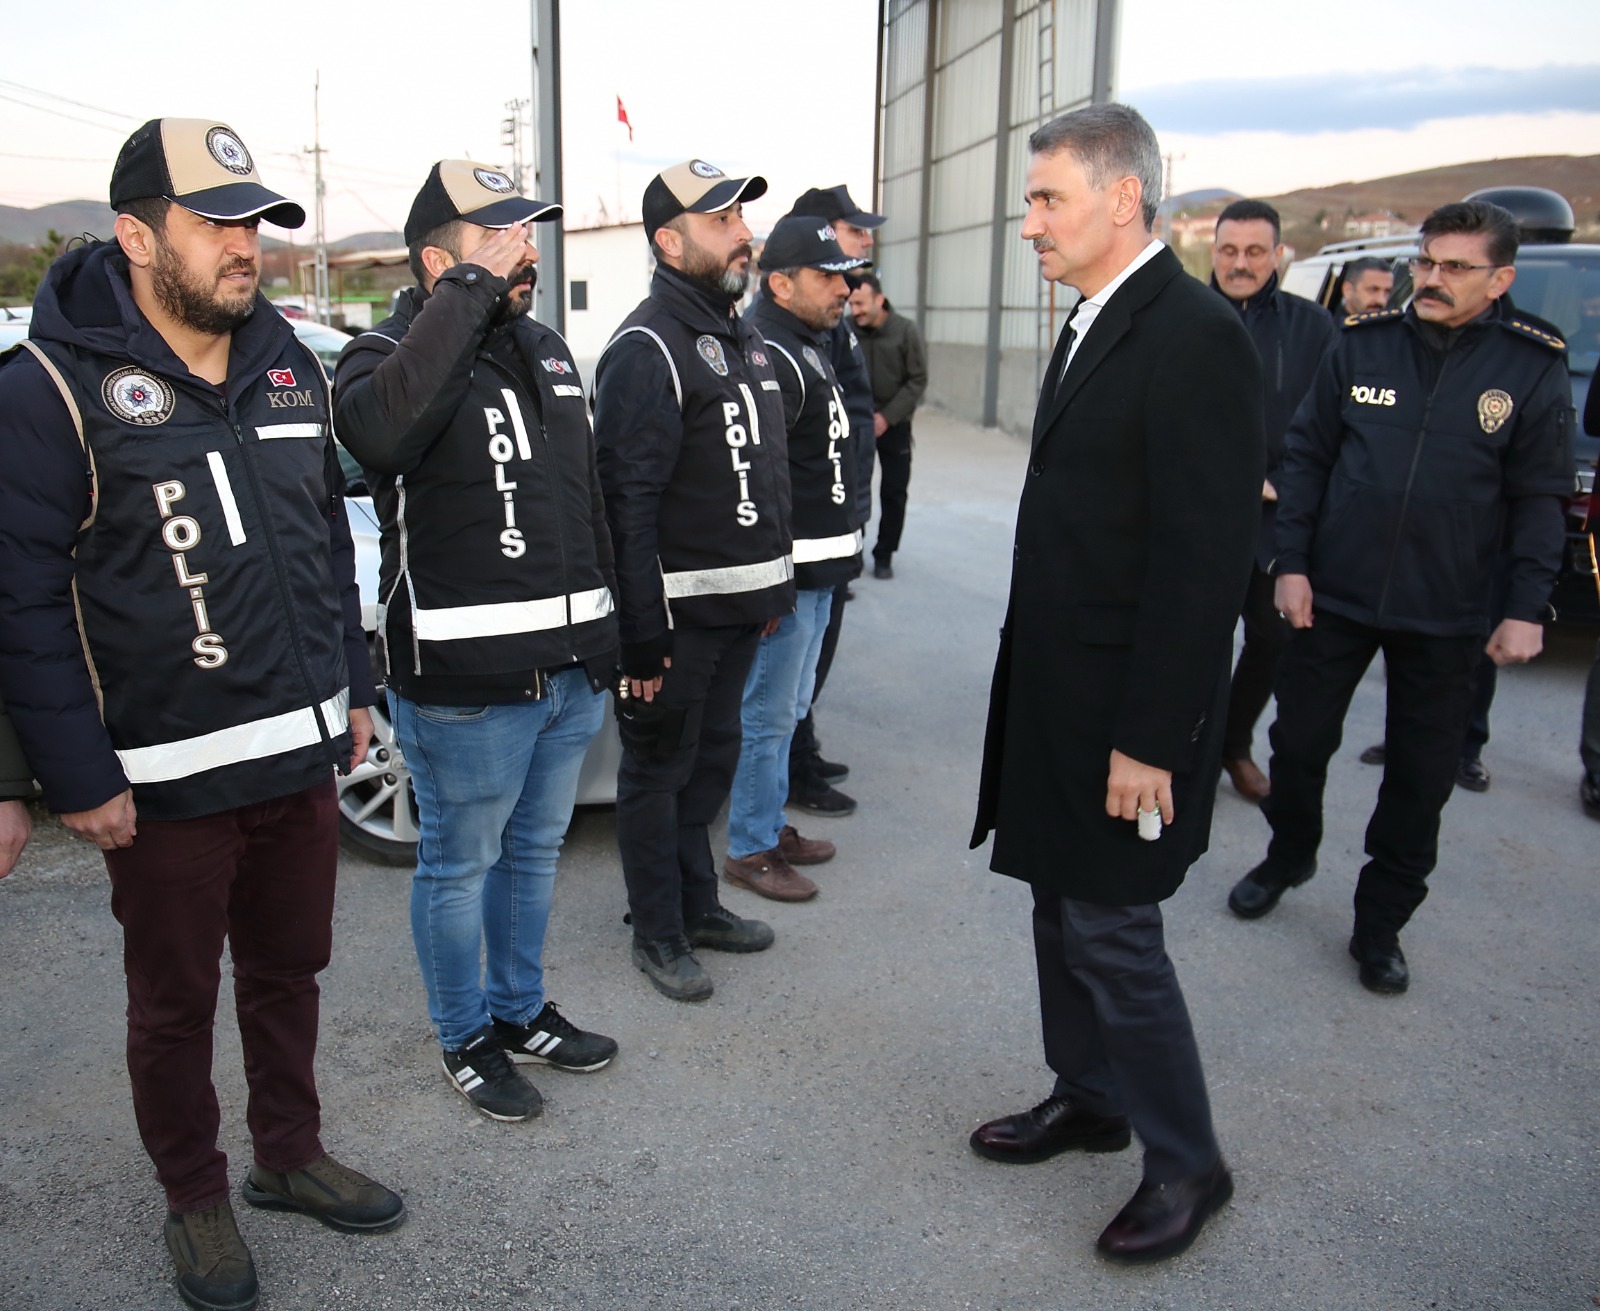 Malatya-Elazığ Karayolu üzerinde bulunan polis kontrol noktasında görev yapan polisler, iftarlarını gelen misafirleri ile birlikte açtılar.